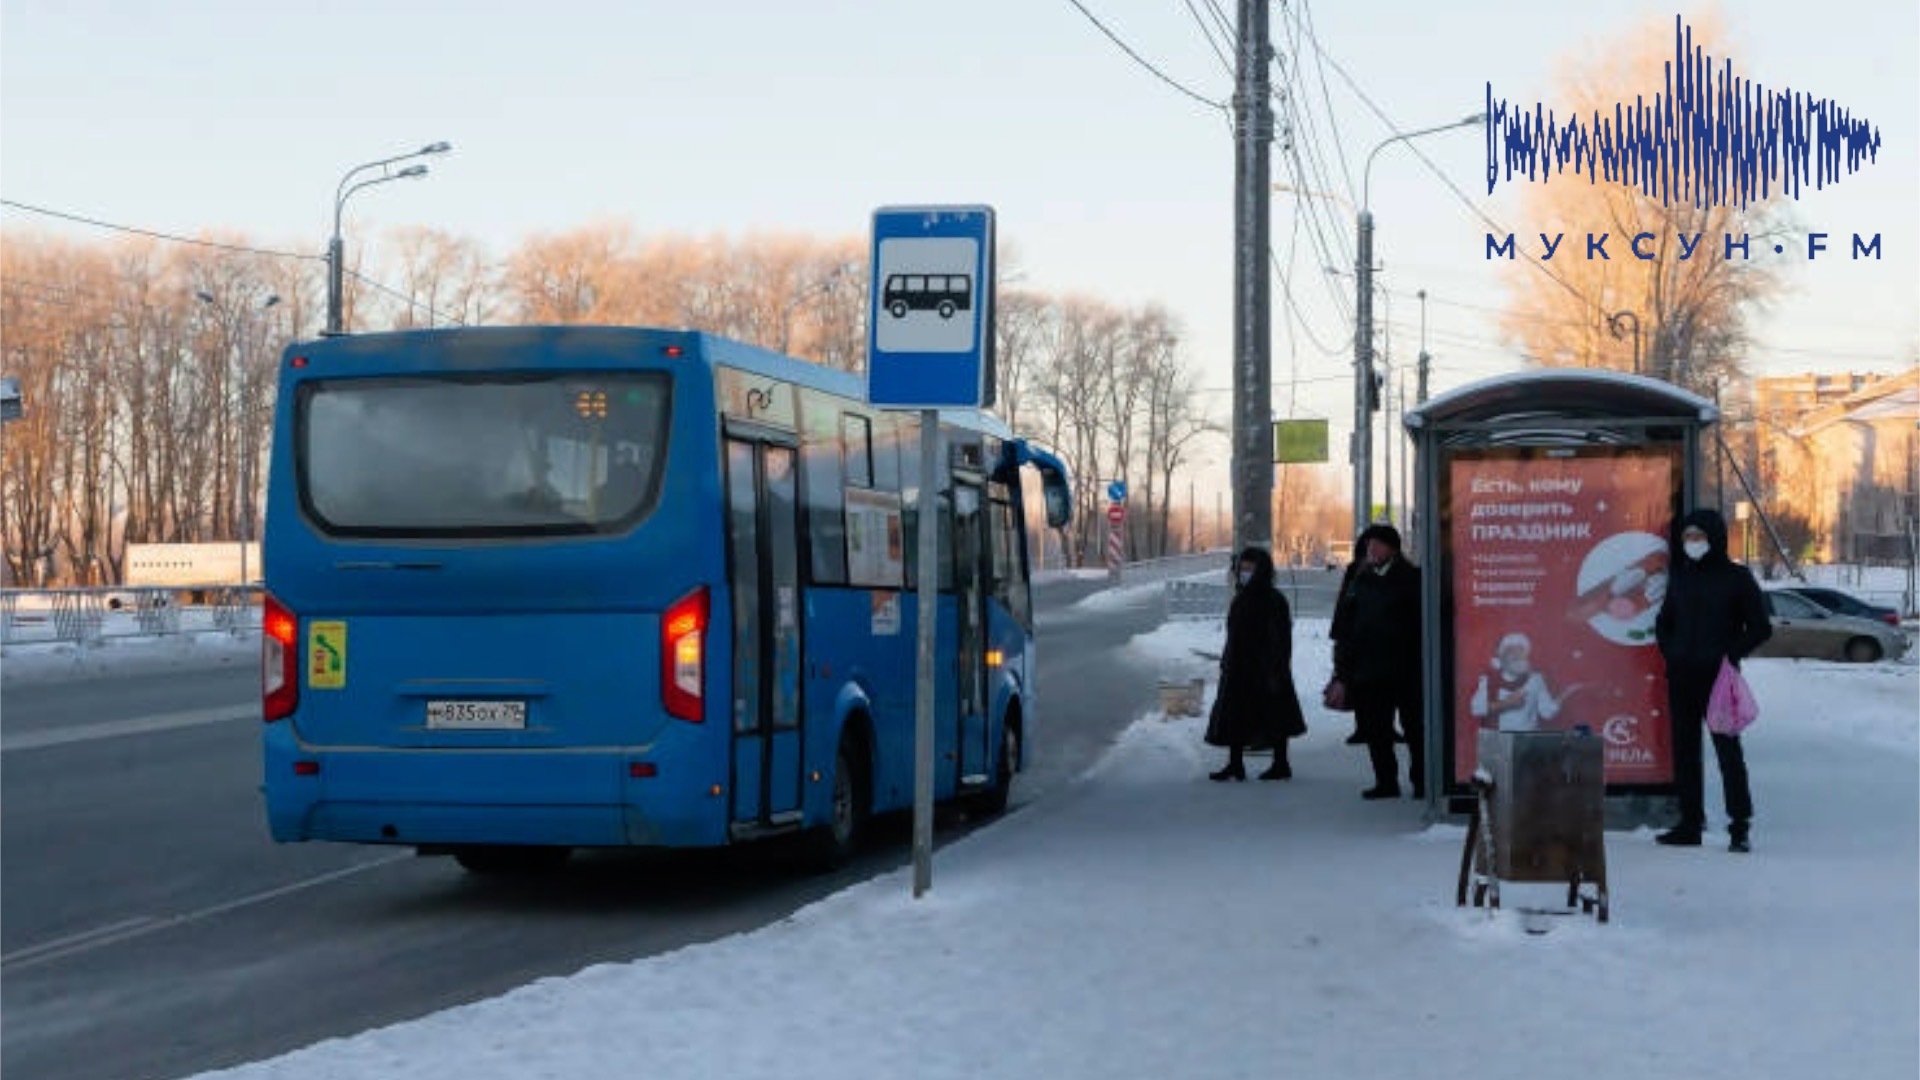 4 архангельских автобуса изменили схему маршрутов из-за ремонта Окружного шоссе